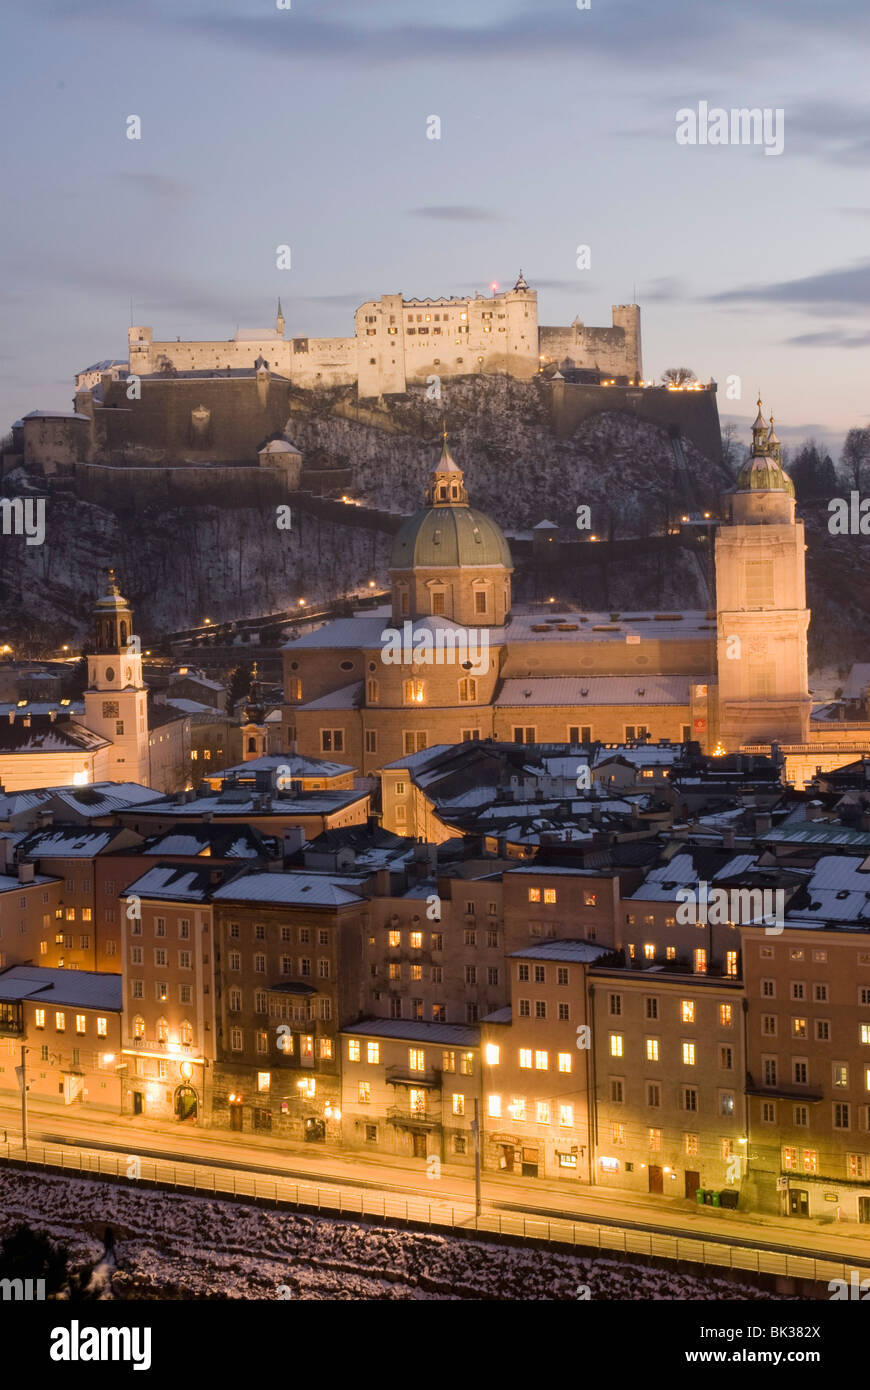 Altstadt mit Türmen von Glockenspiel, Salzburg, Österreich Stockfoto